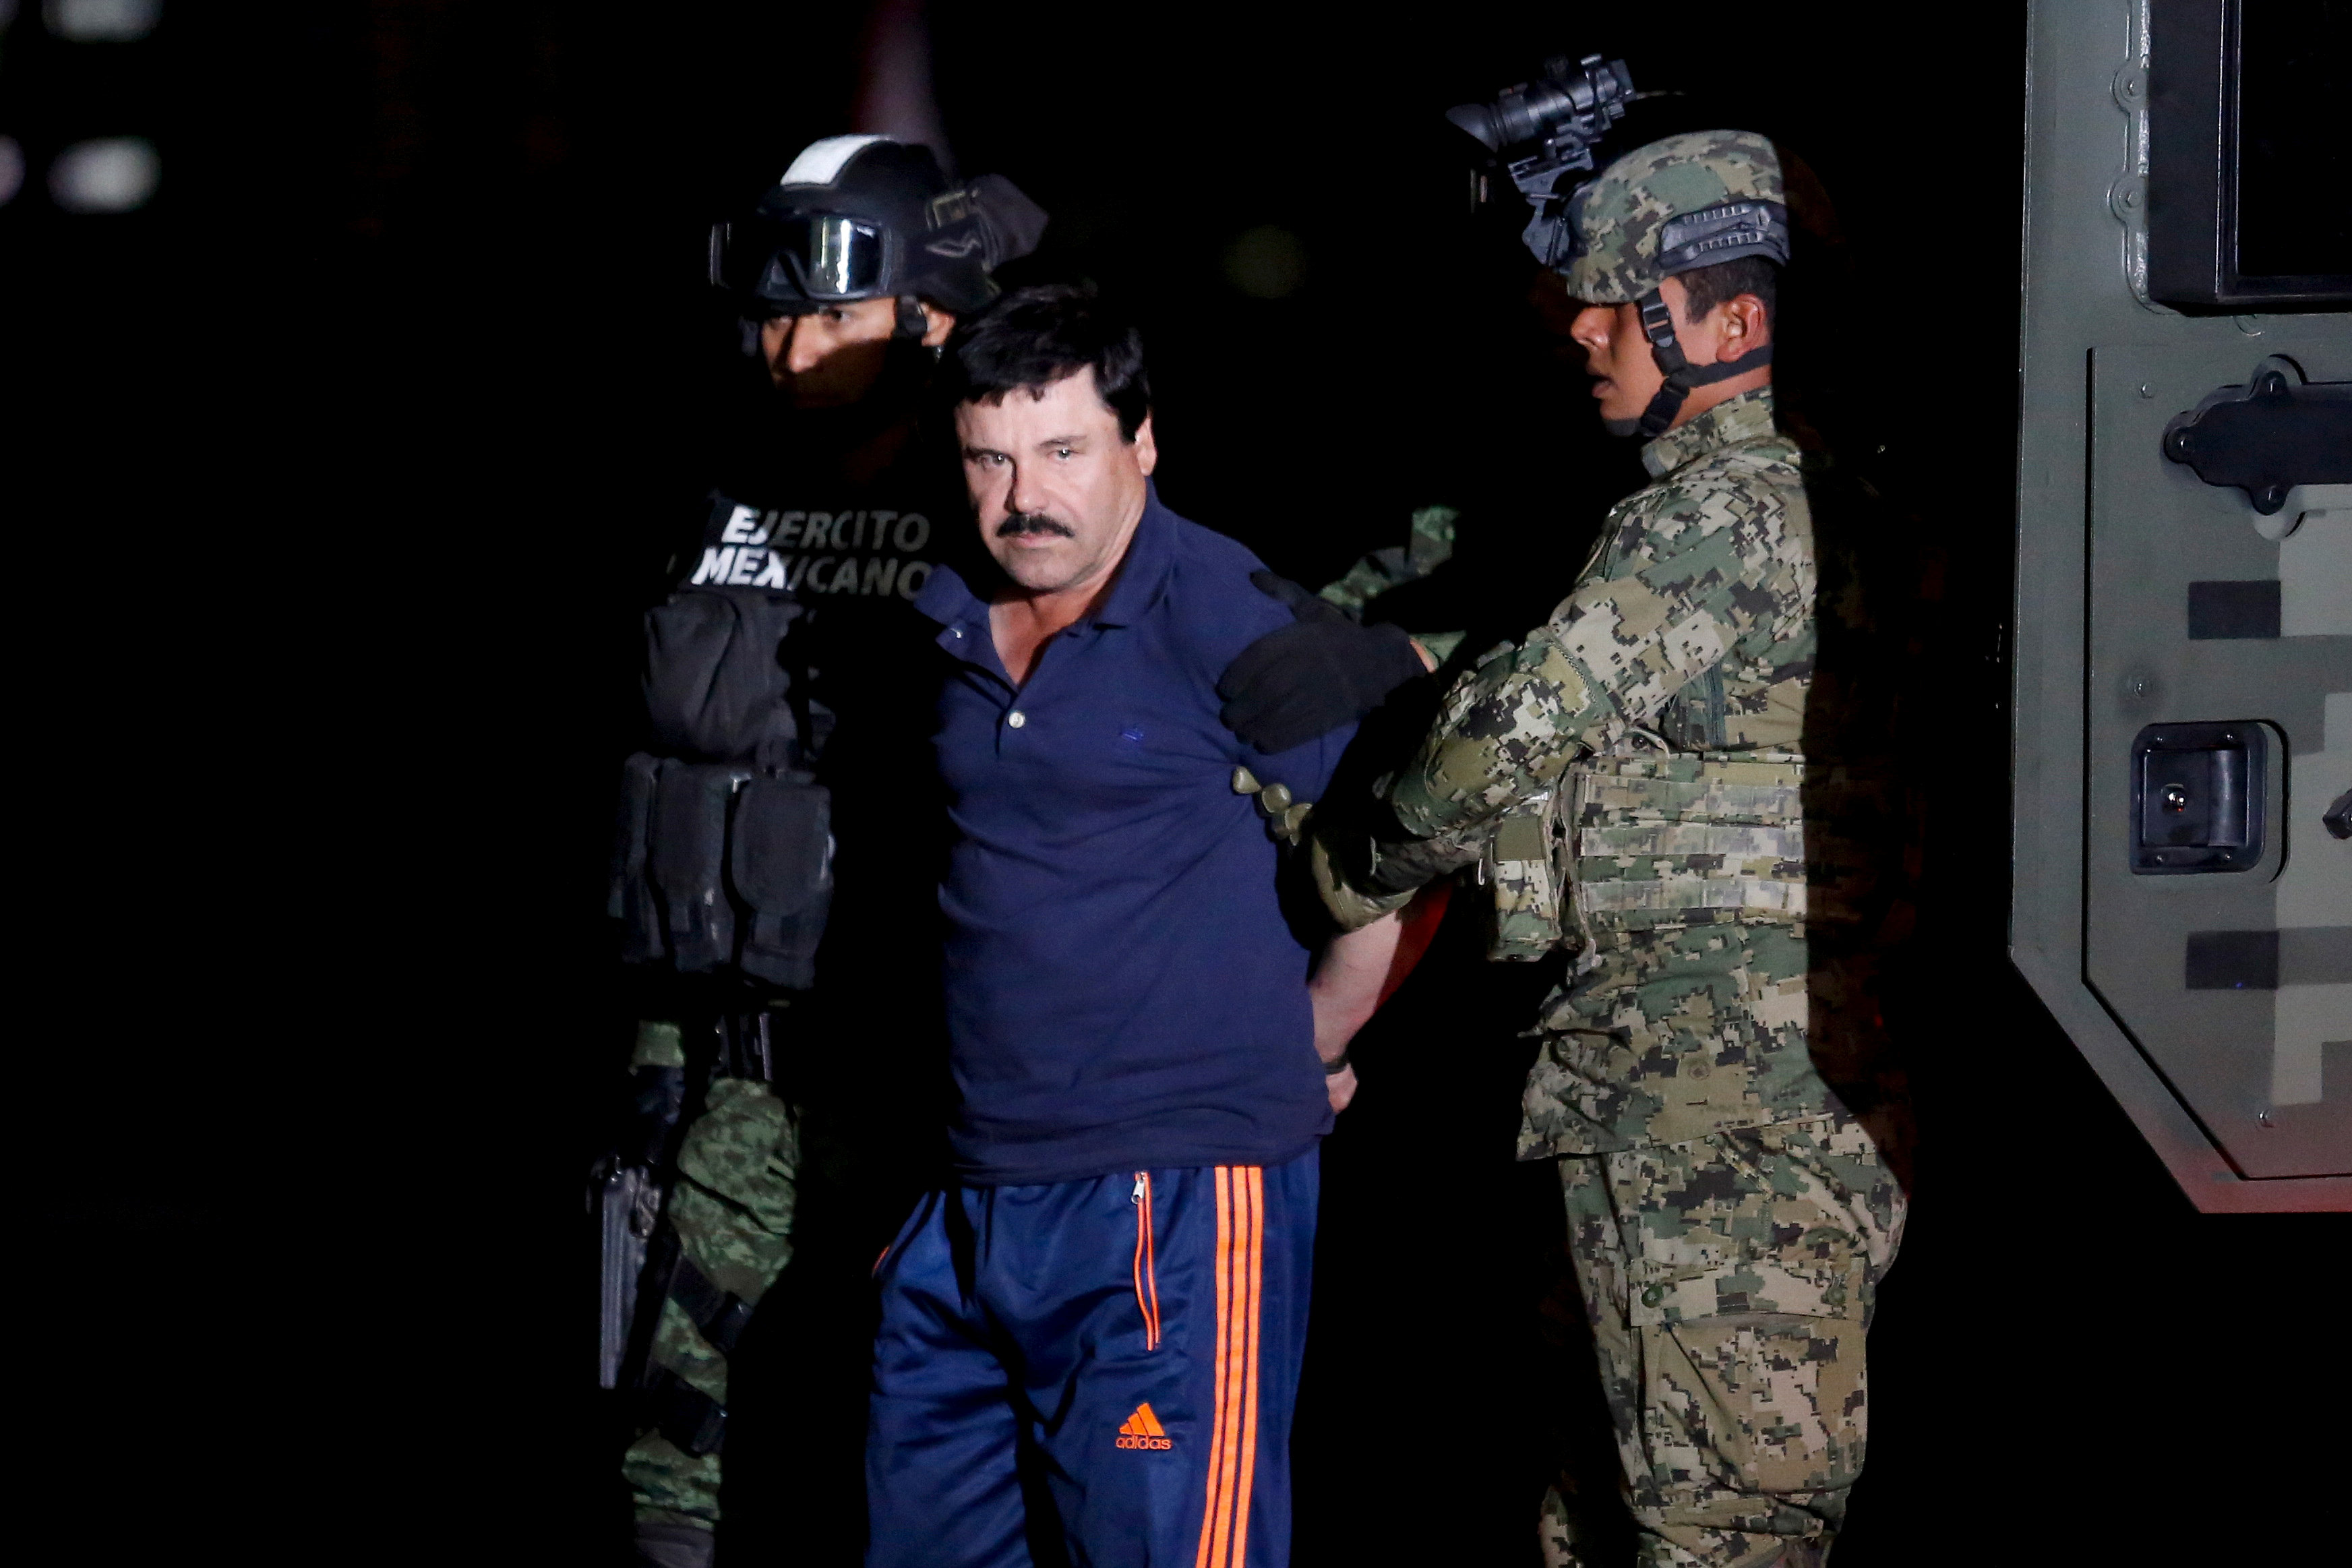 El Chapo se ha escapado varias veces de prisiones de máxima seguridad de México.